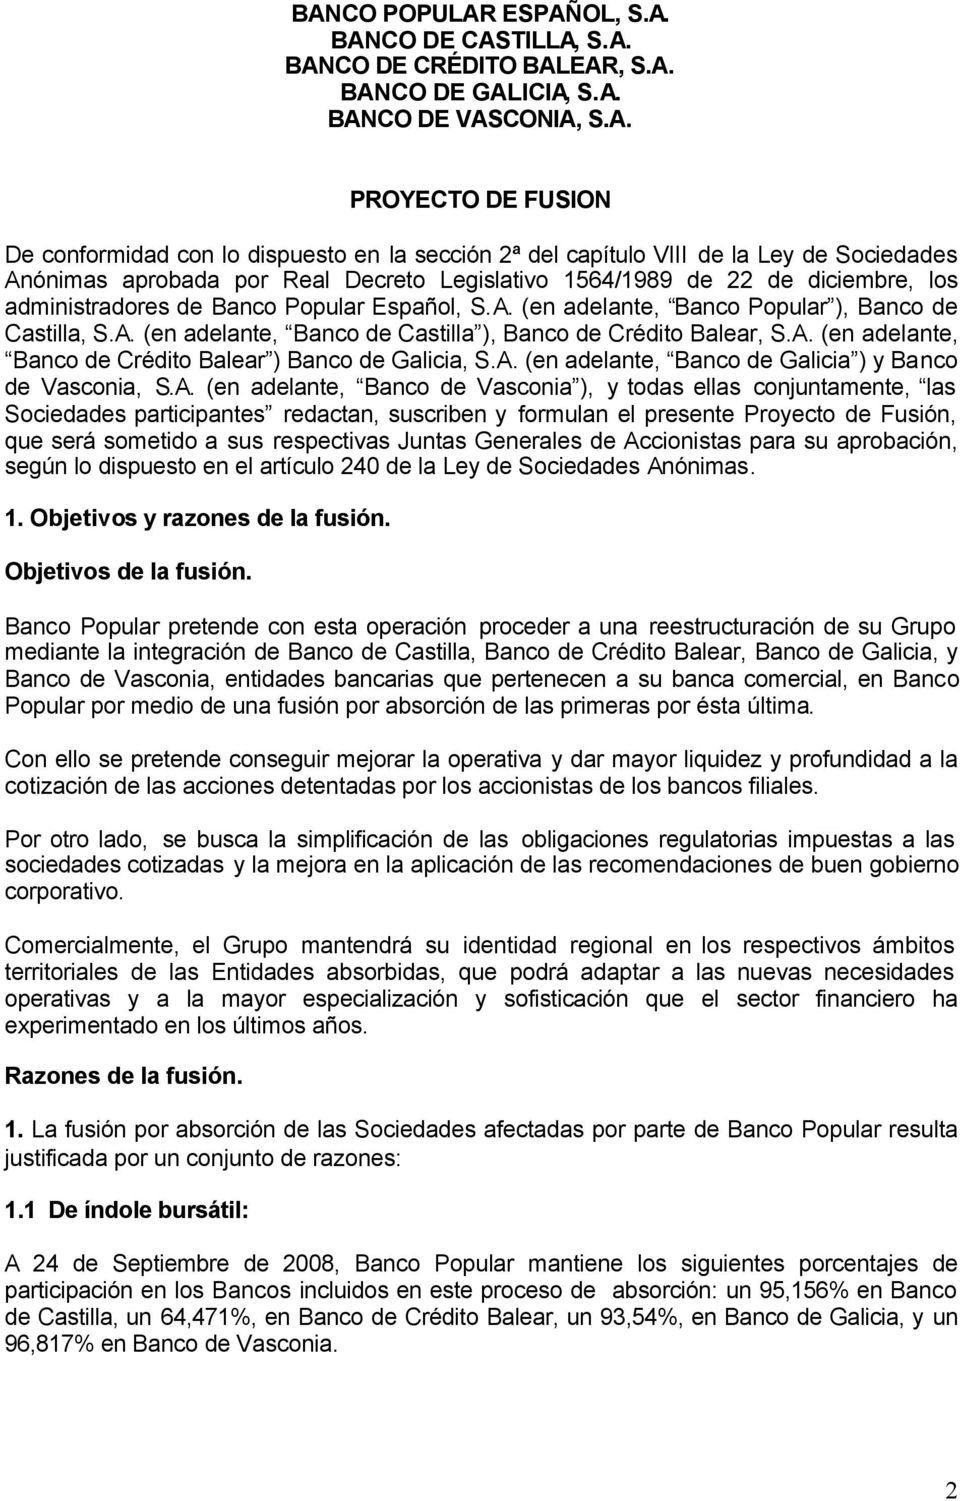 A. (en adelante, Banco de Castilla ), Banco de Crédito Balear, S.A. (en adelante, Banco de Crédito Balear ) Banco de Galicia, S.A. (en adelante, Banco de Galicia ) y Banco de Vasconia, S.A. (en